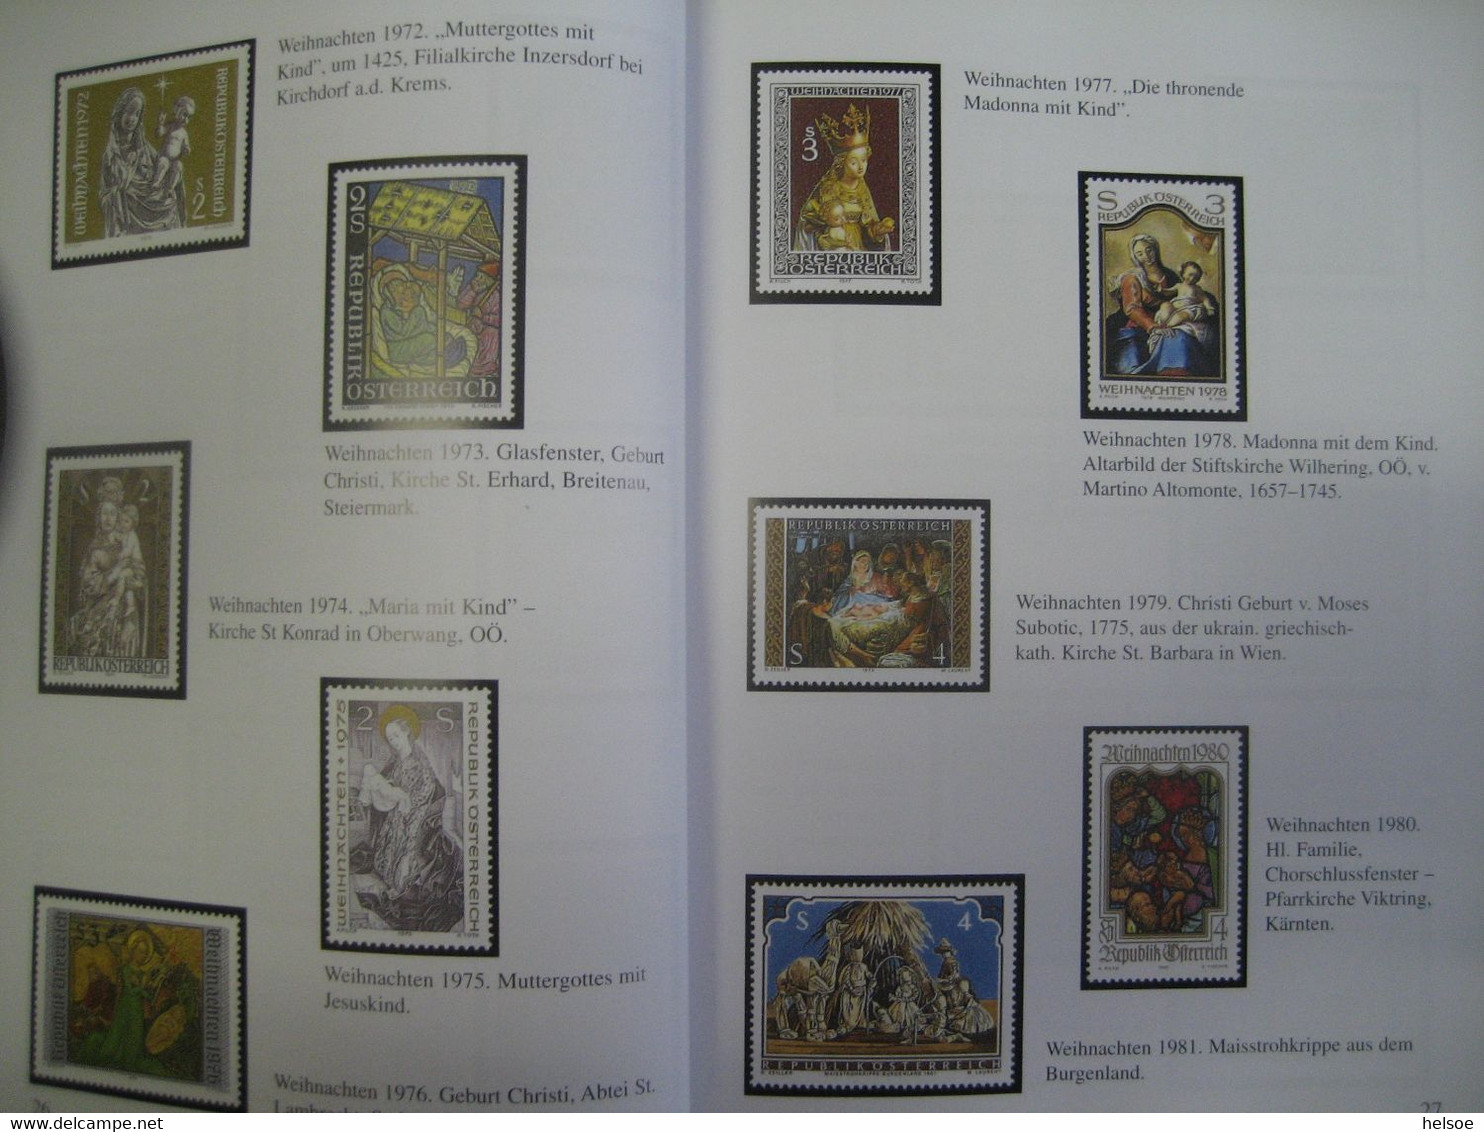 Österreich 2001- Christkindl. Wo das Christkind die Briefe aufgibt. Handbuch mit 80 Seiten aus dem Norka Verlag